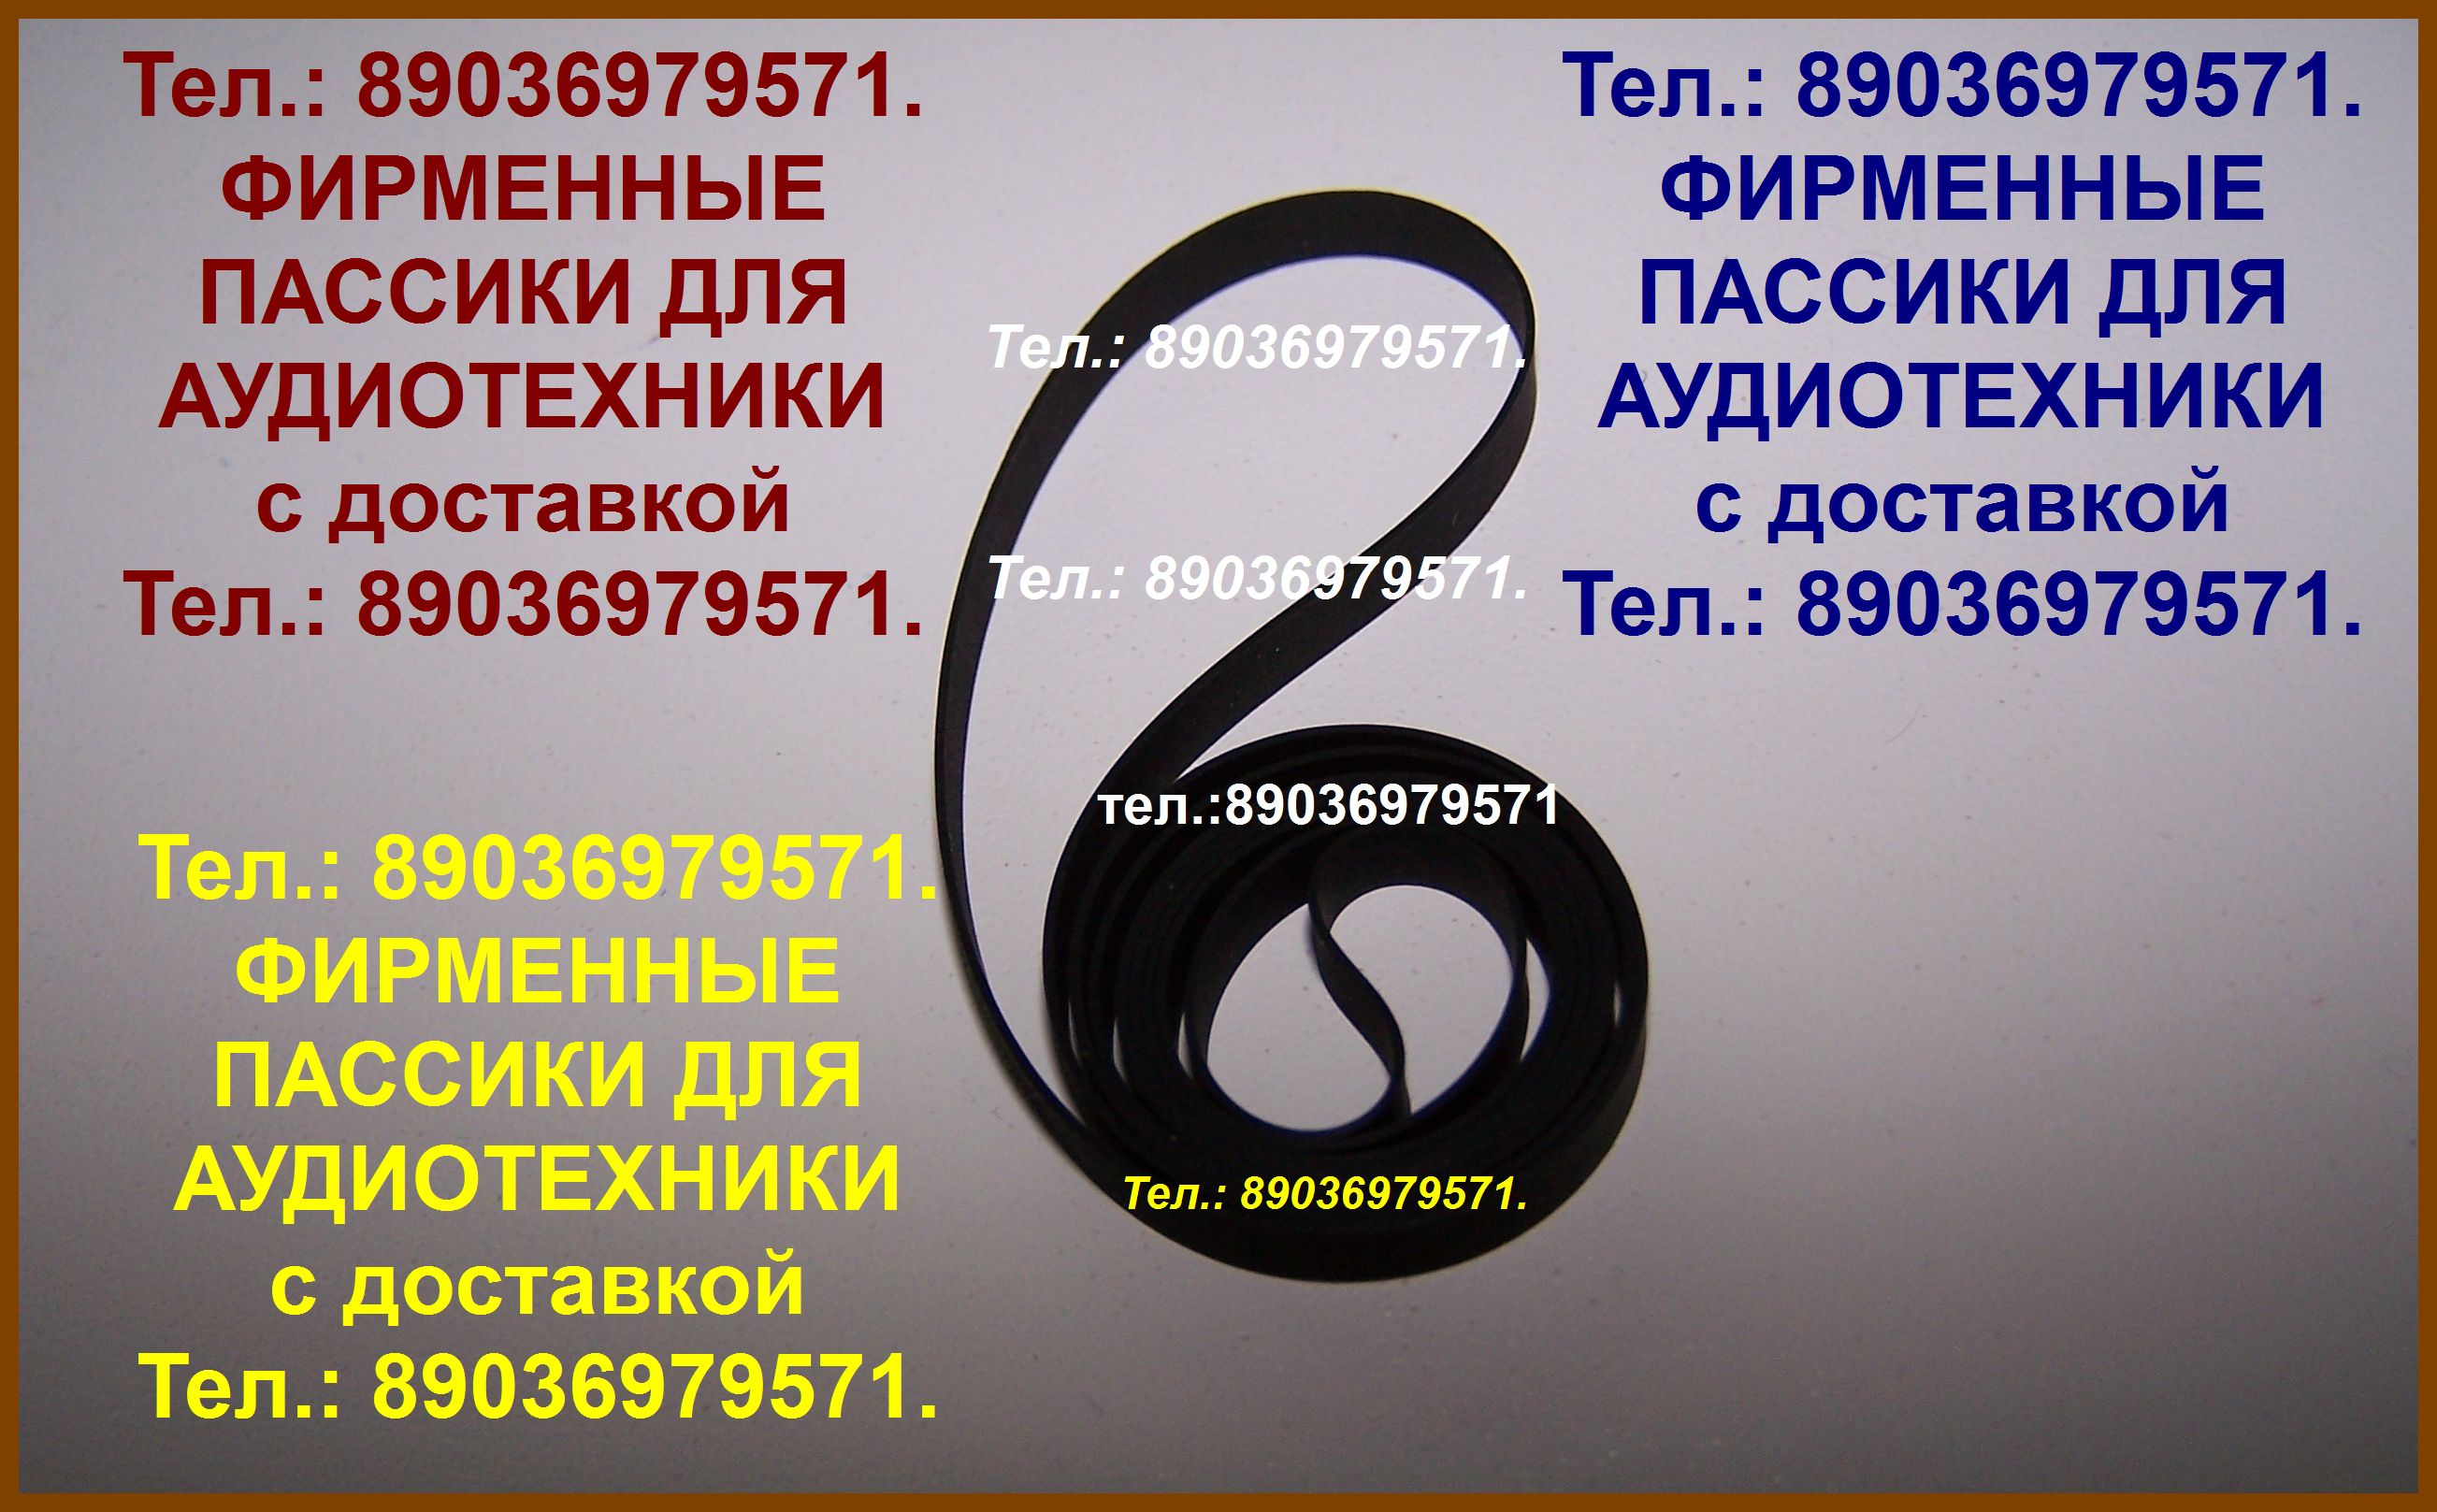 Пассики Technics японский пассик для Technics SLBD20 SL-BD3 SL-23 SL-230 SL-3 ремень ремни для проигрывателей винила в городе Москва, фото 1, телефон продавца: +7 (903) 697-95-71